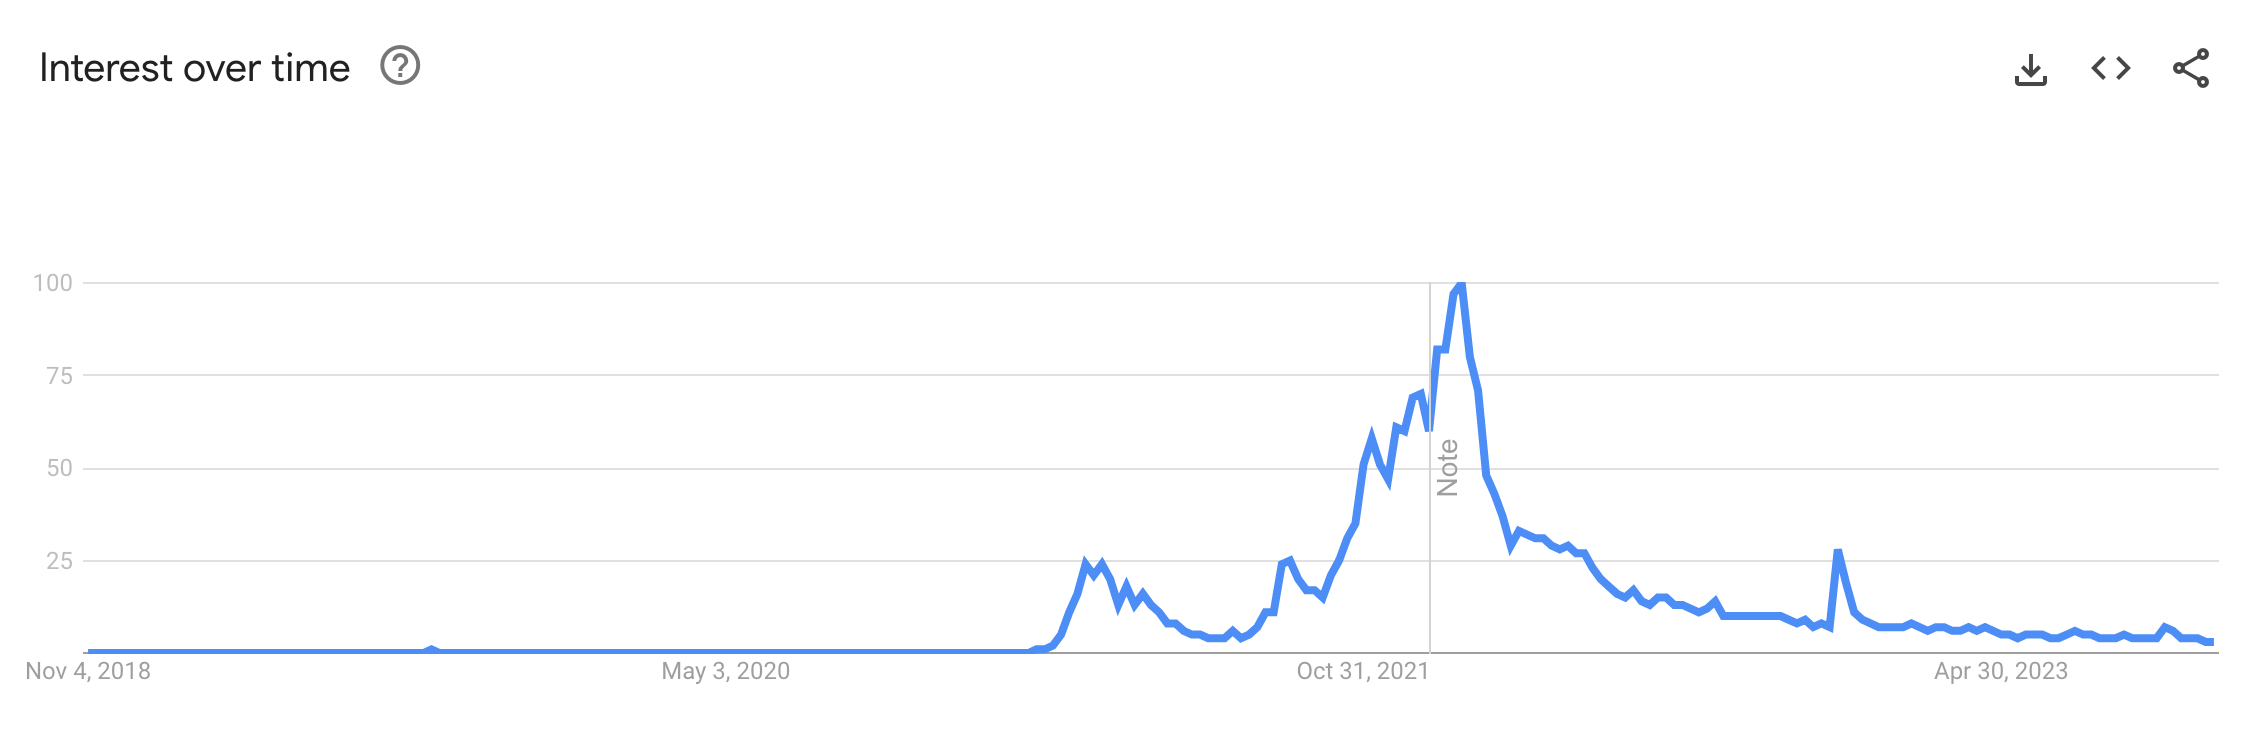 NFT interest over time via Google Trends.